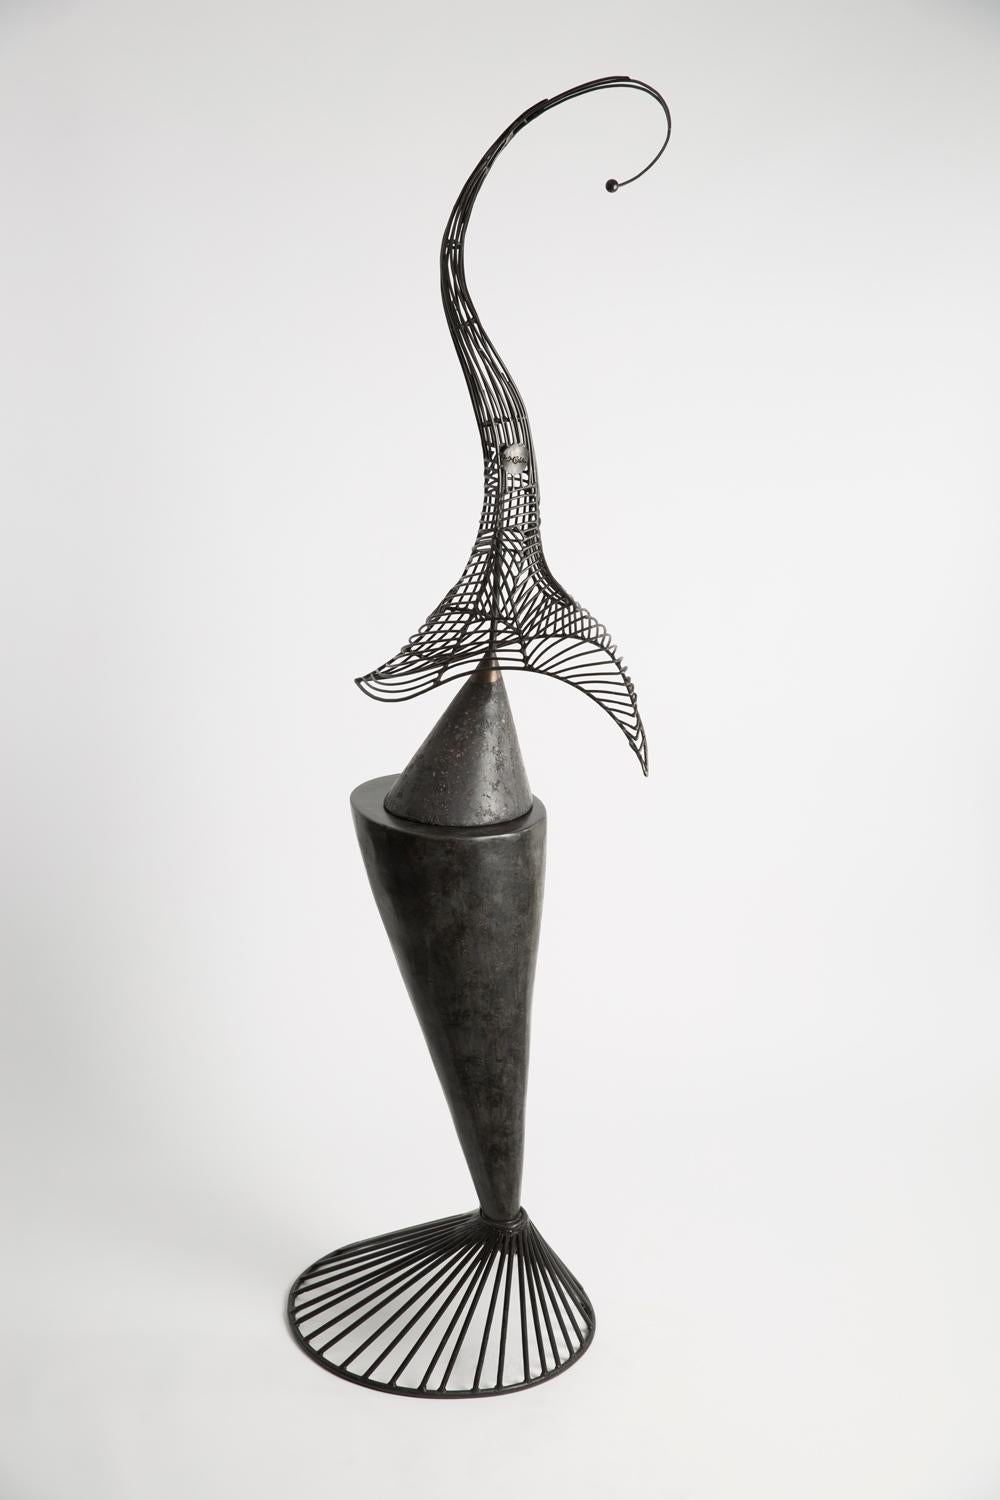 Jeff Glode Wise Abstract Sculpture - "High Heel Stingray" indoor kinetic sculpture 